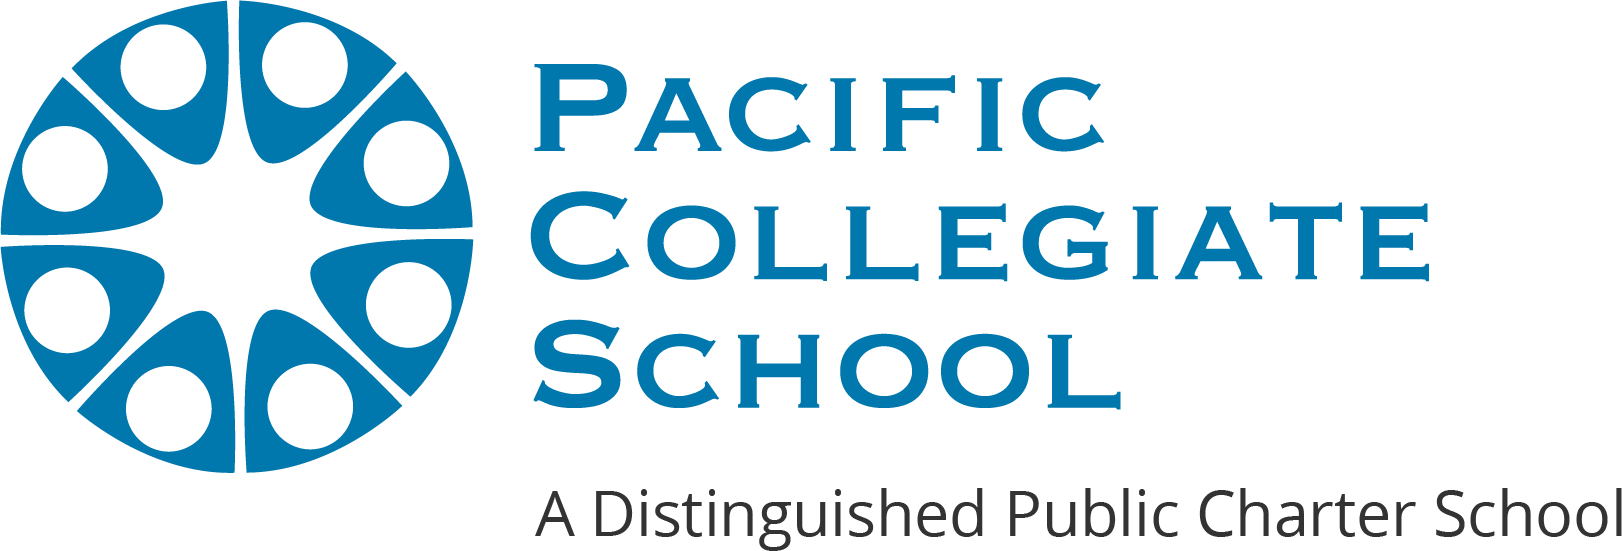 Pacific Collegiate School - logo